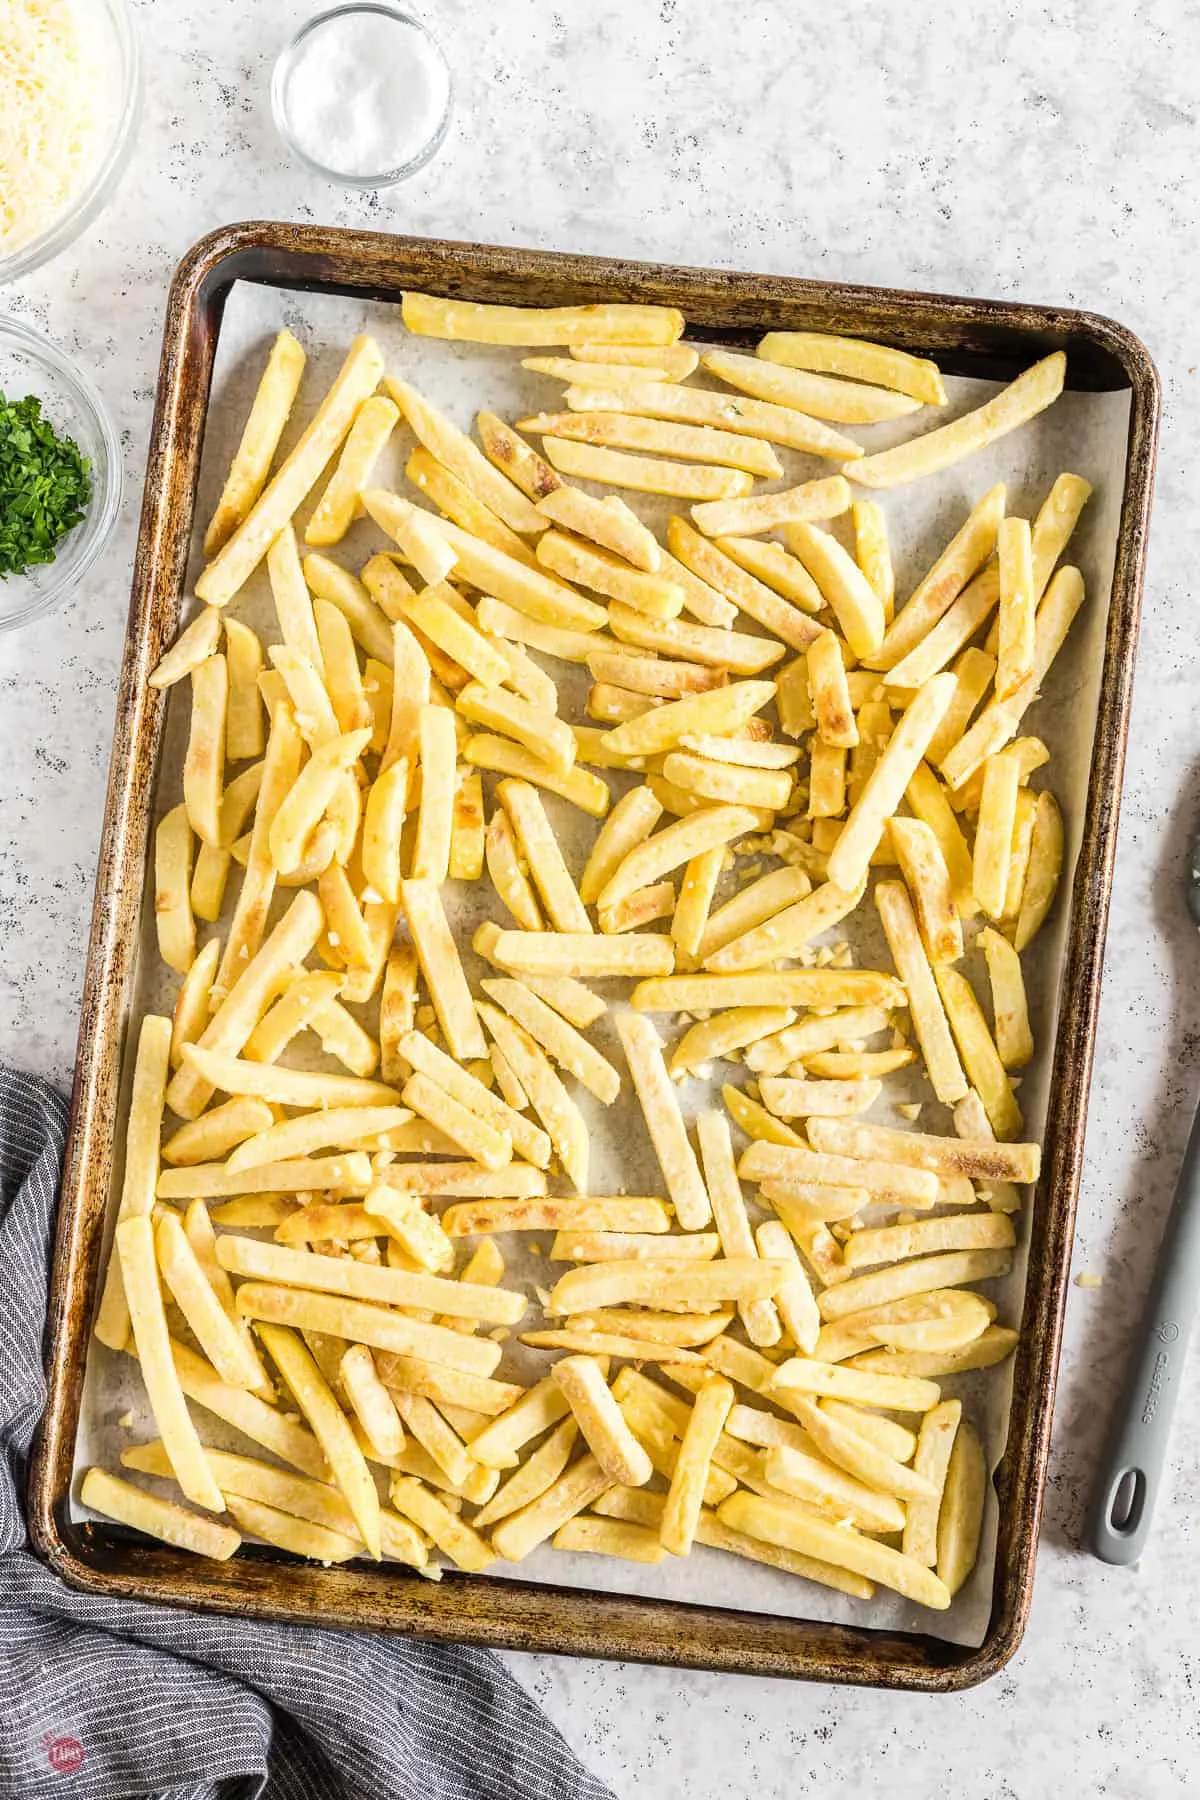 sheet pan of fries